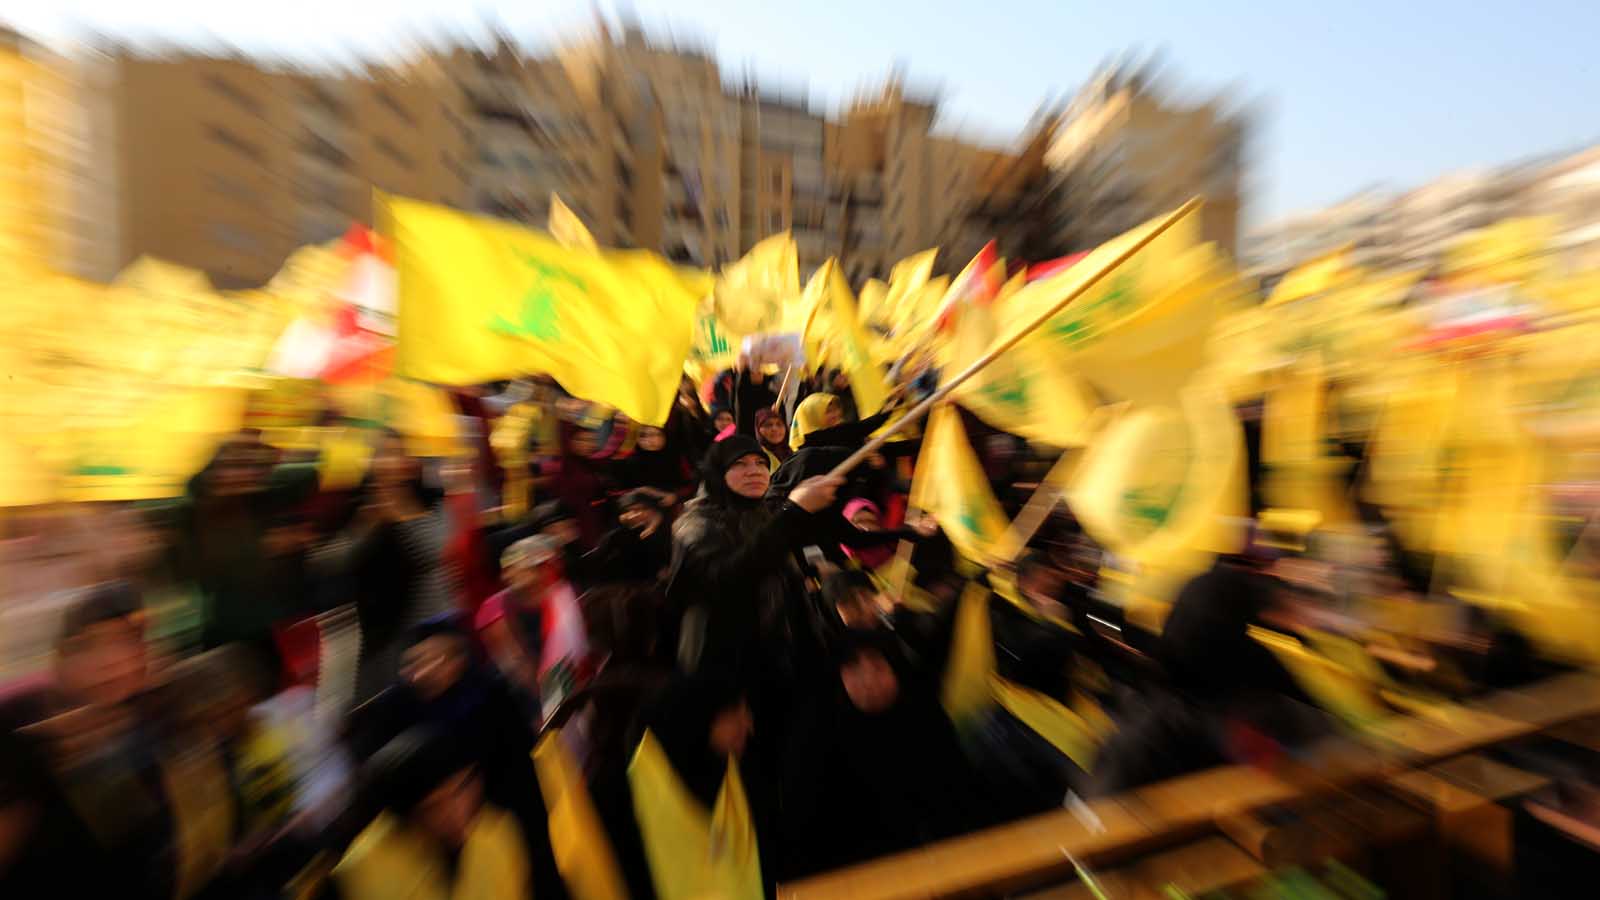 هكذا يدخل حزب الله في النظام: الايجابية مع الجميع